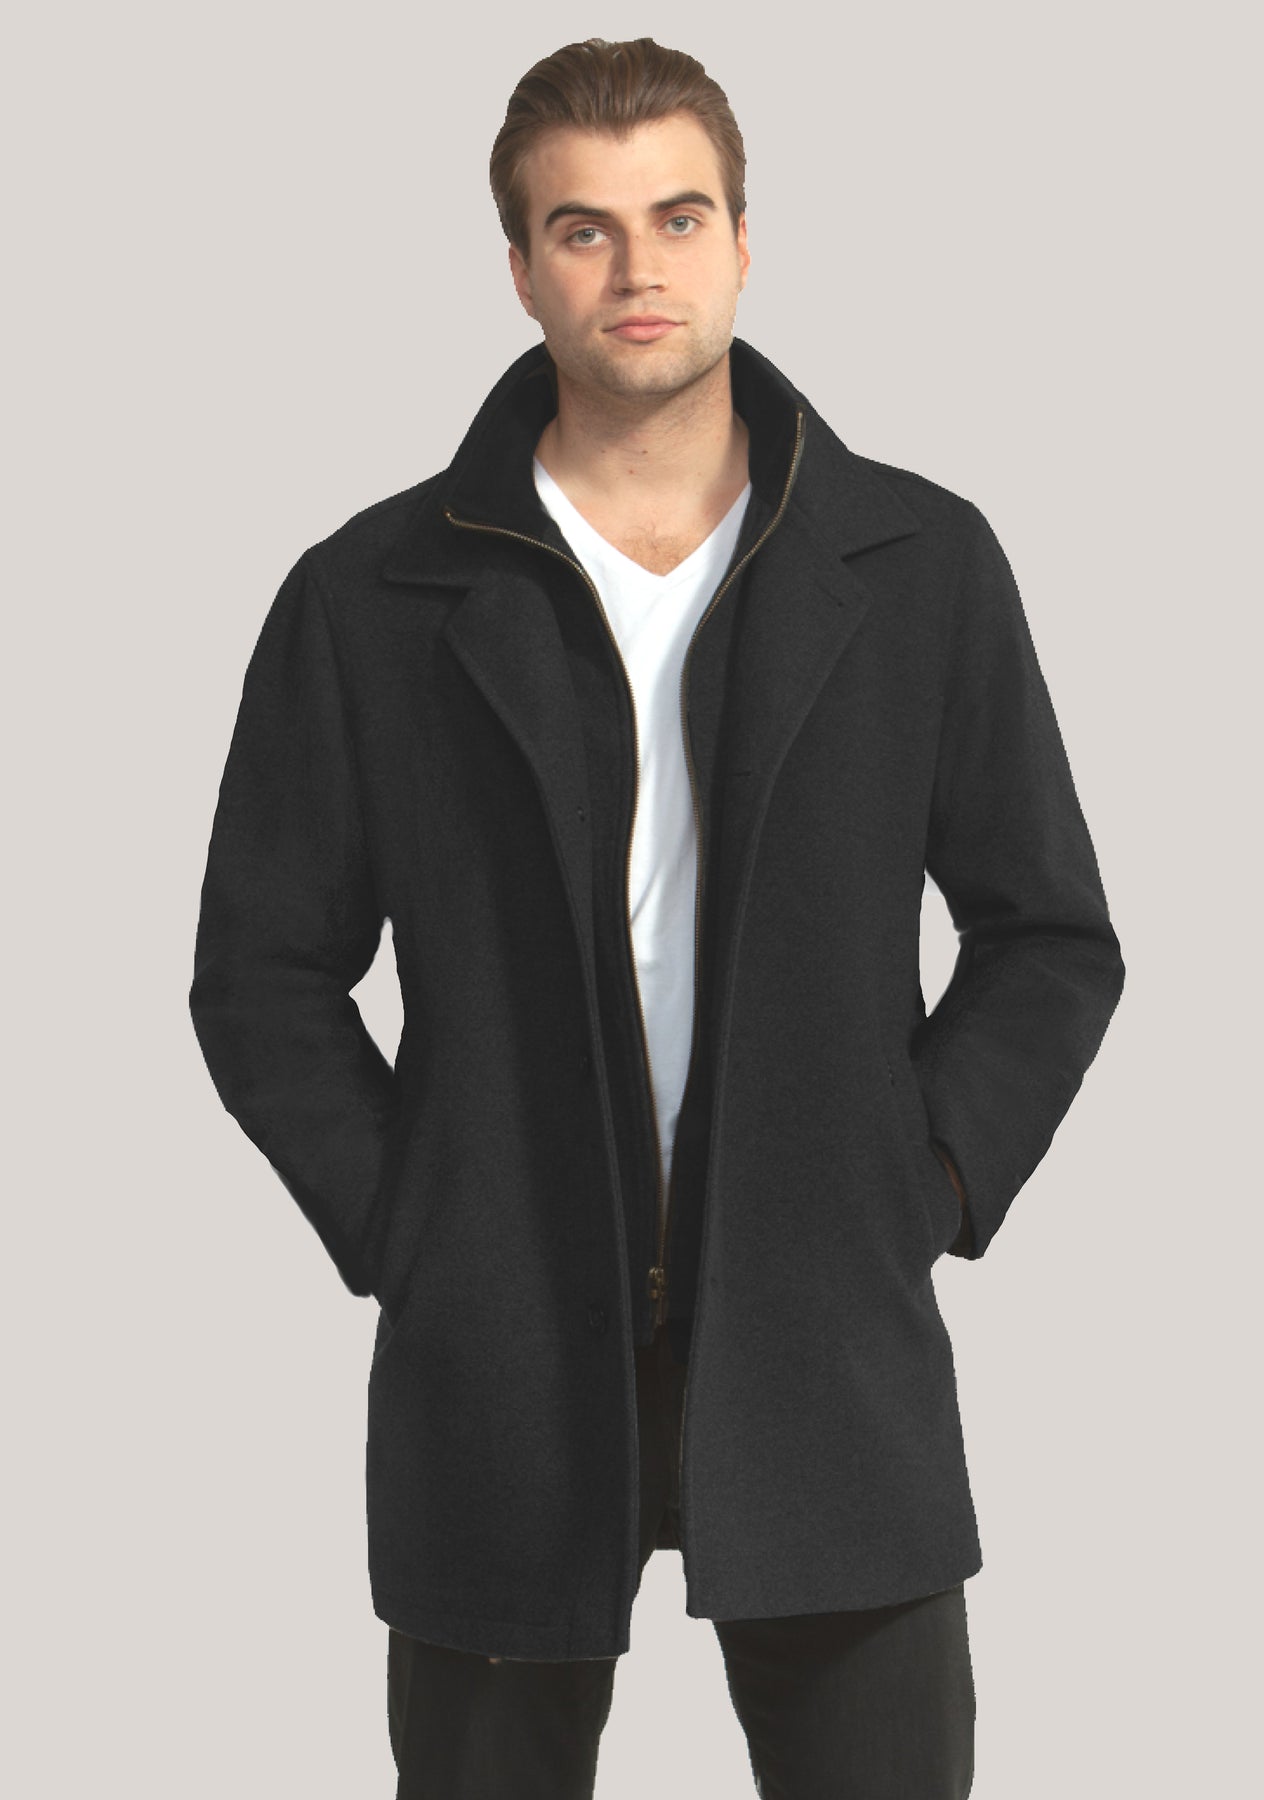 Men's Winter Coats for sale in Redlands, California